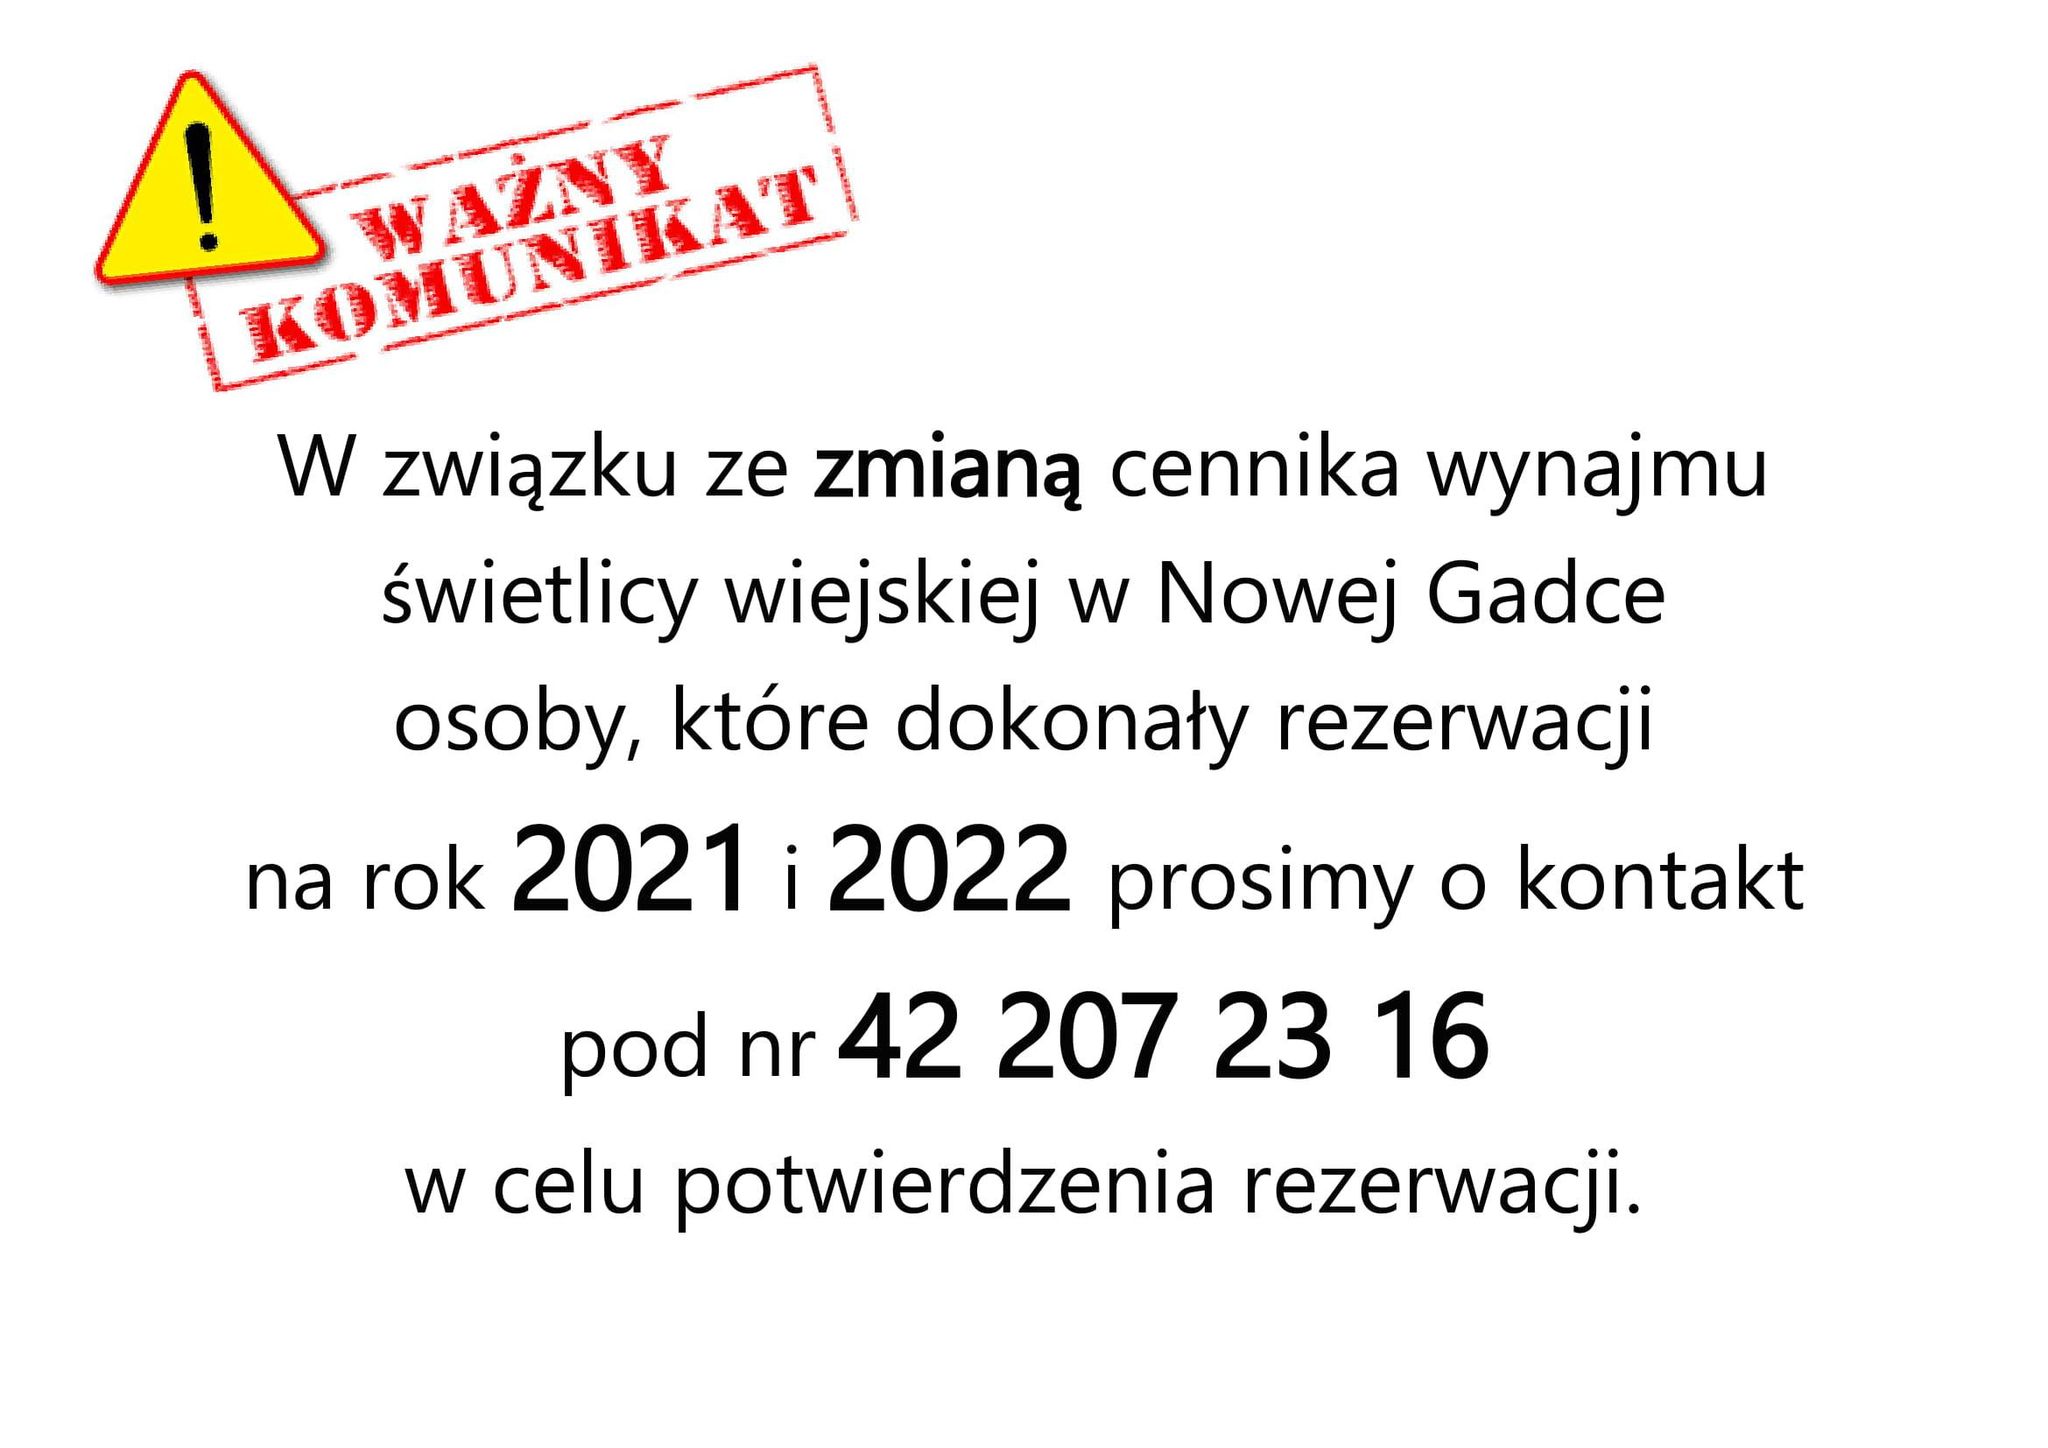 W związku ze zmianą cennika wynajmu świetlicy wiejskiej w Nowej Gadce
osoby, które dokonały rezerwacji na rok 2021 i 2022 prosimy o kontakt pod nr 42 207 23 16 w celu potwierdzenia rezerwacji.